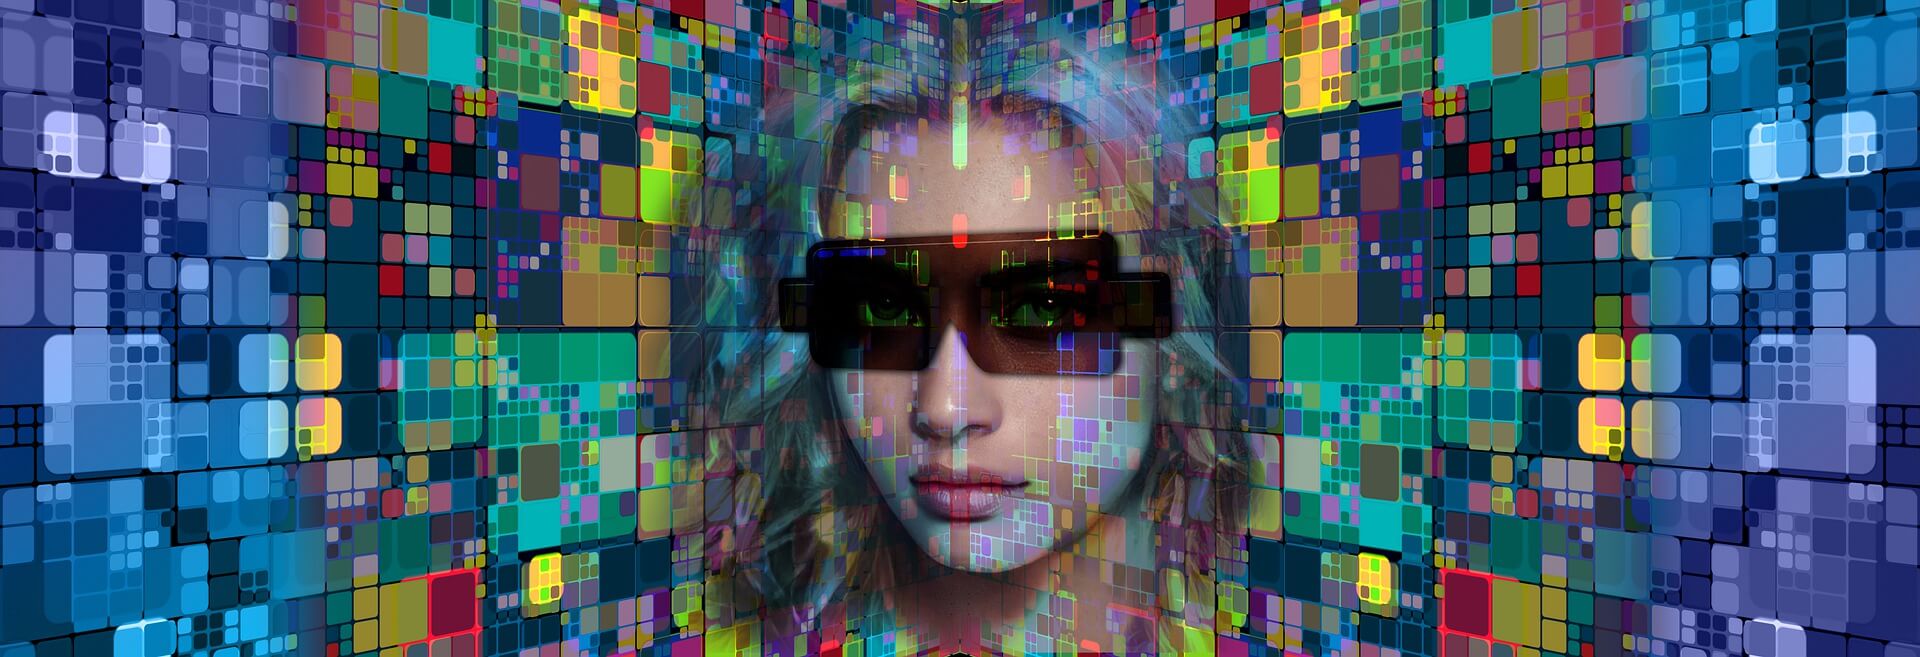 图片展示了一位戴着墨镜的女性面部，背景为色彩斑斓的立方体图案，营造出一种科技感和未来感。